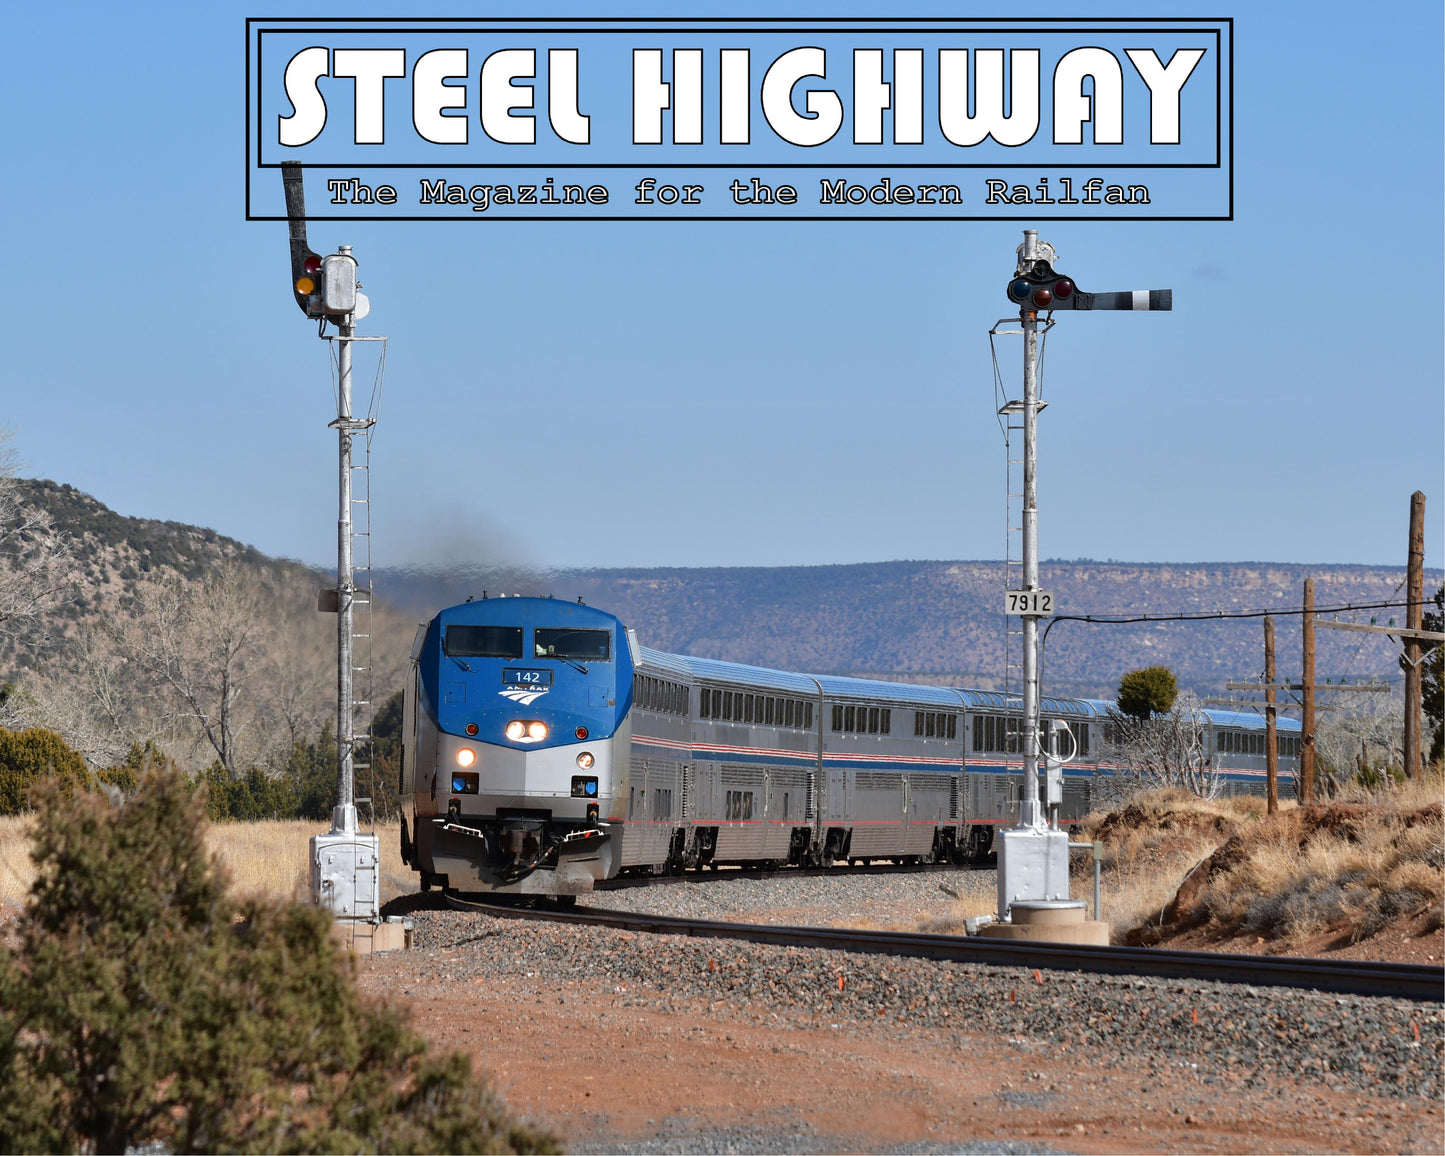 Steel Highway #0004